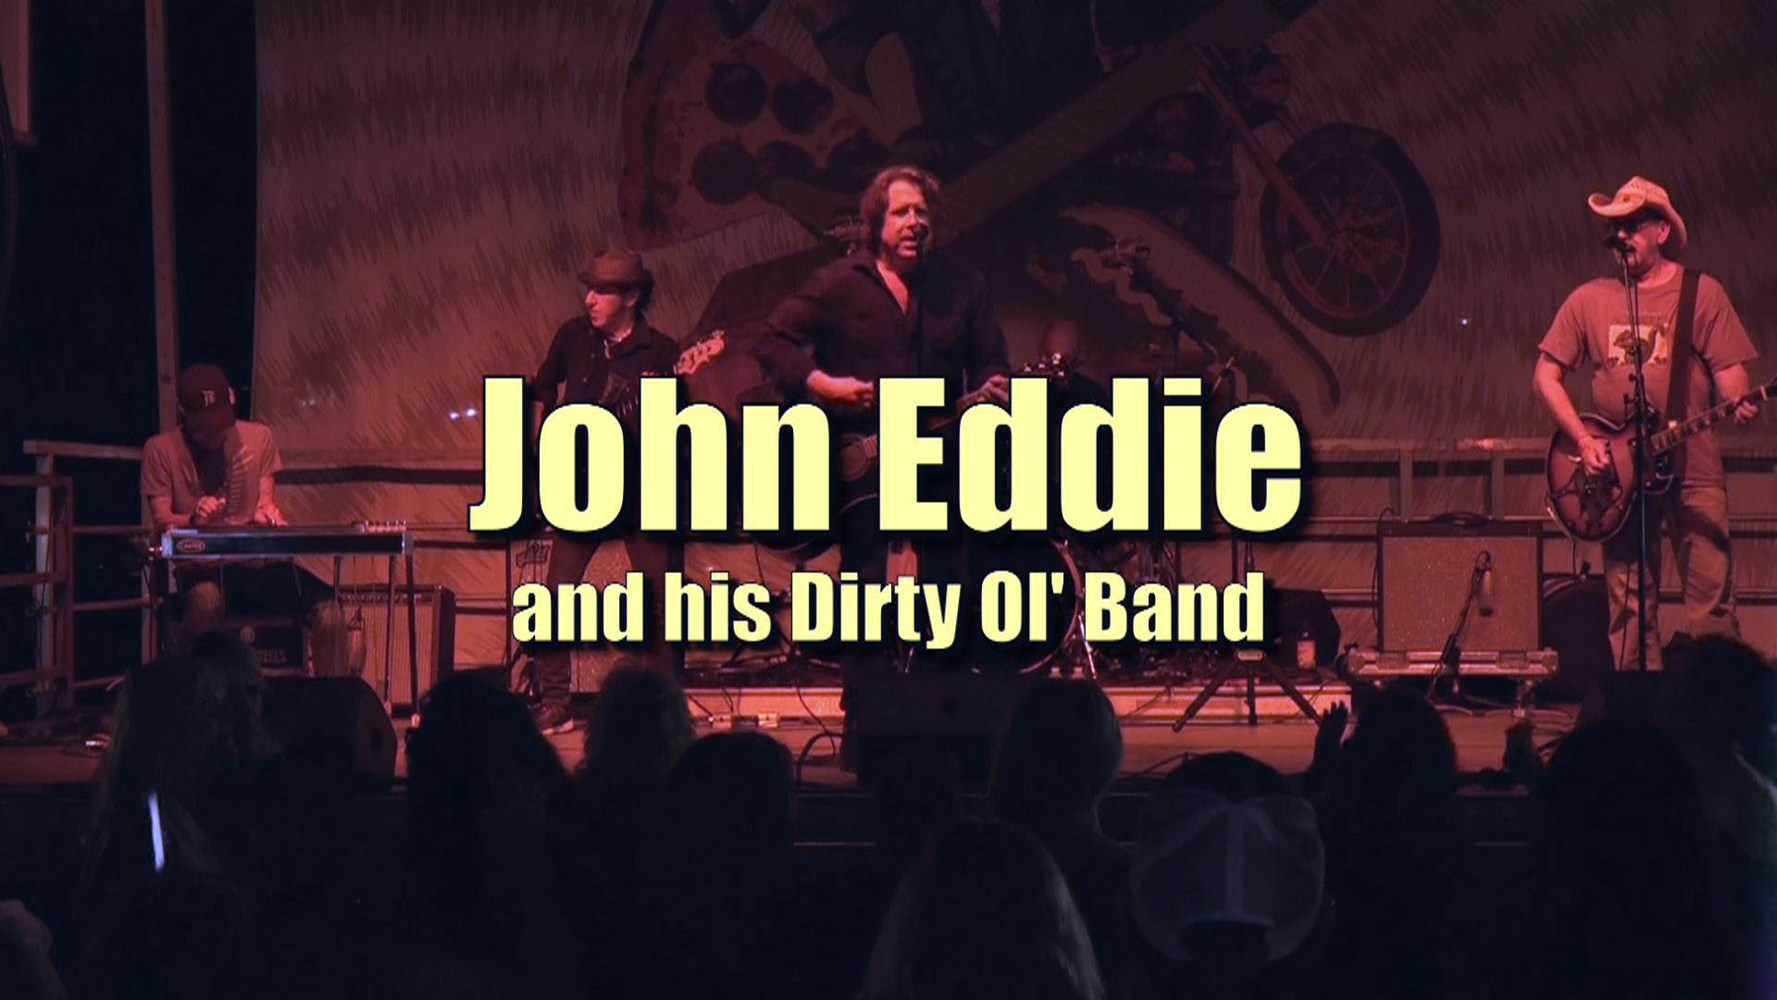 john eddie tour